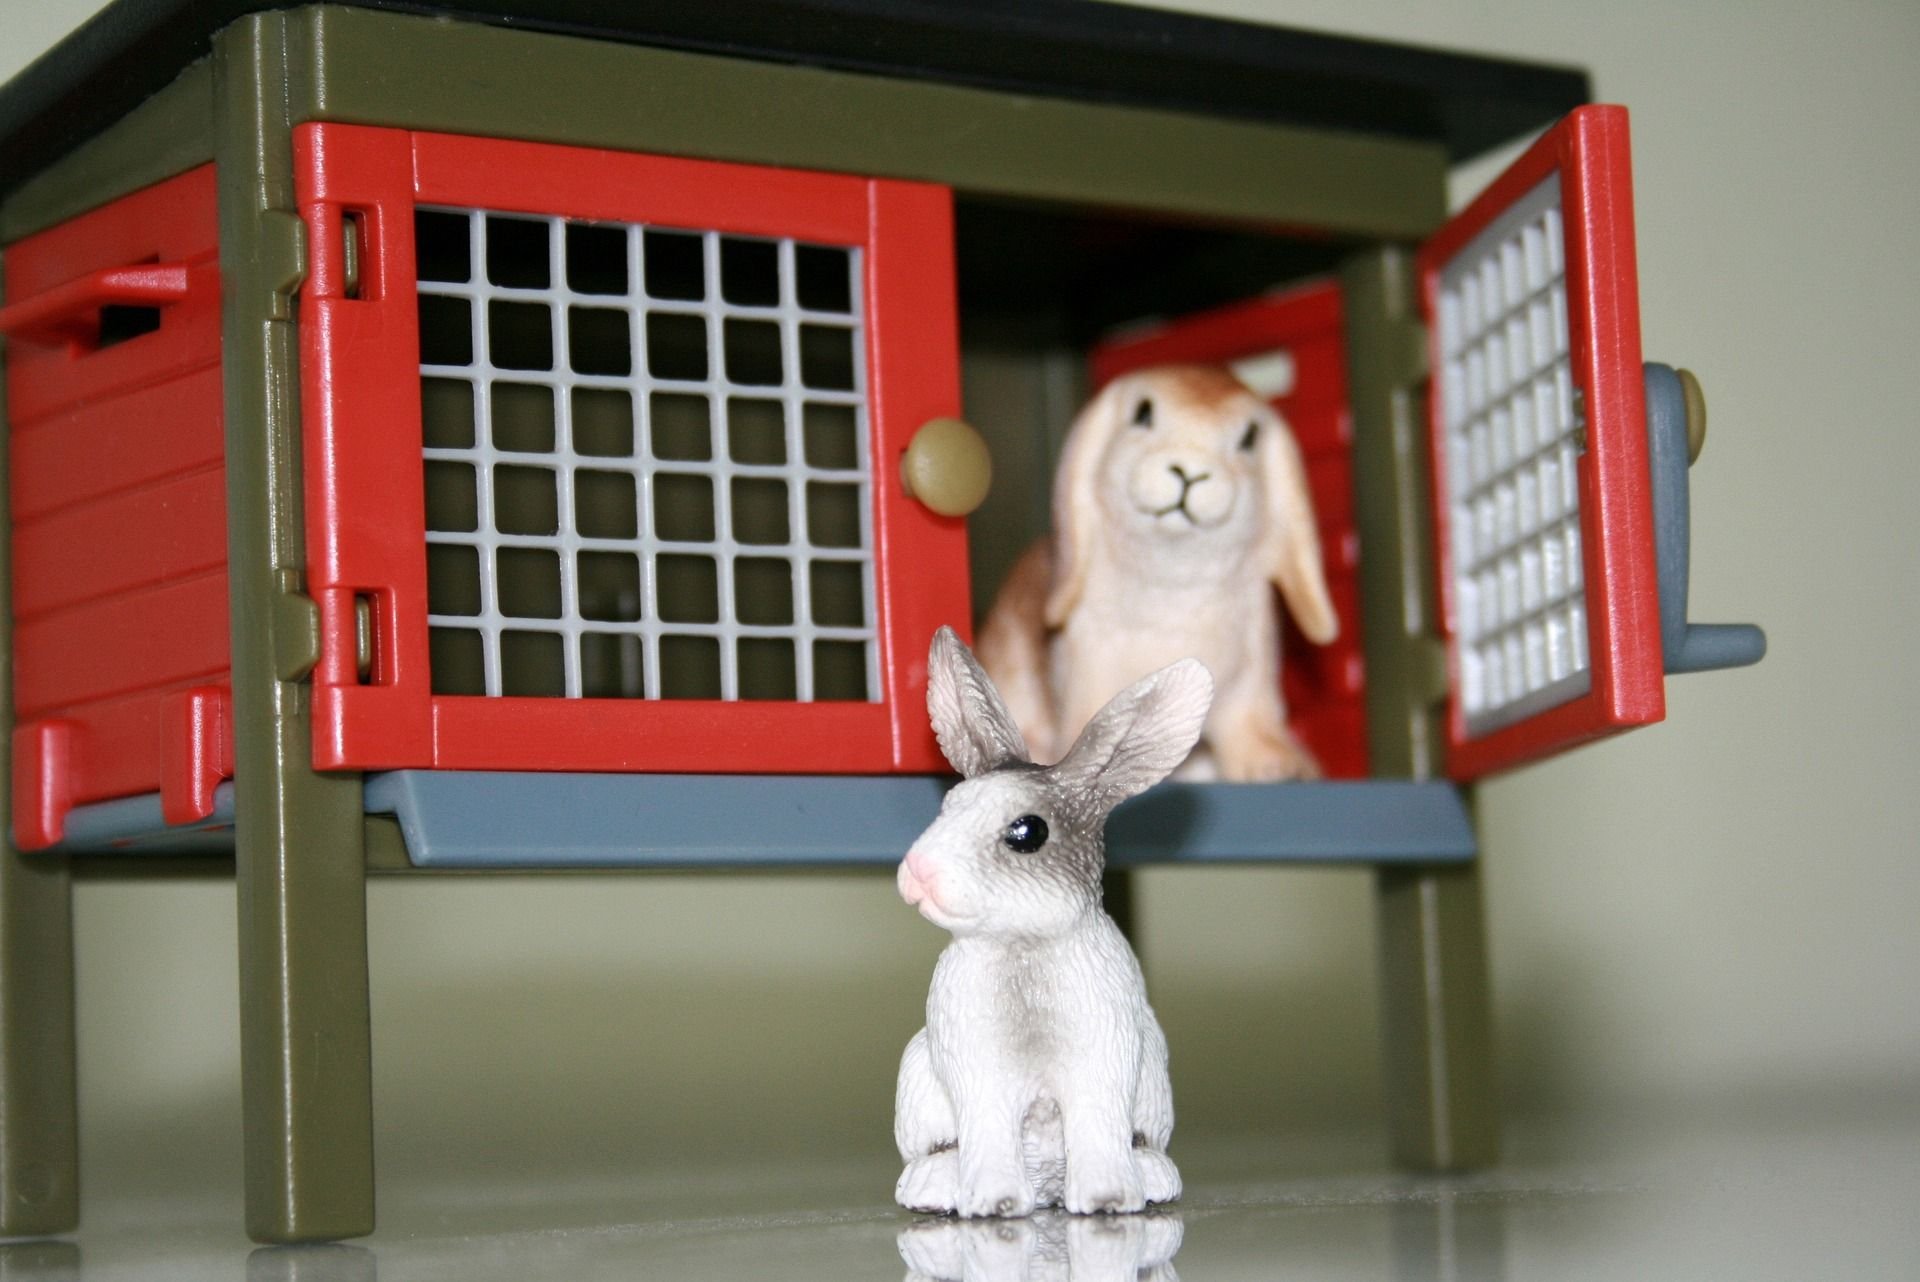 Office krolik. Клетка для кроликов. Игрушки для кролика в клетку. Игрушка кролик. Клетка для зайца.